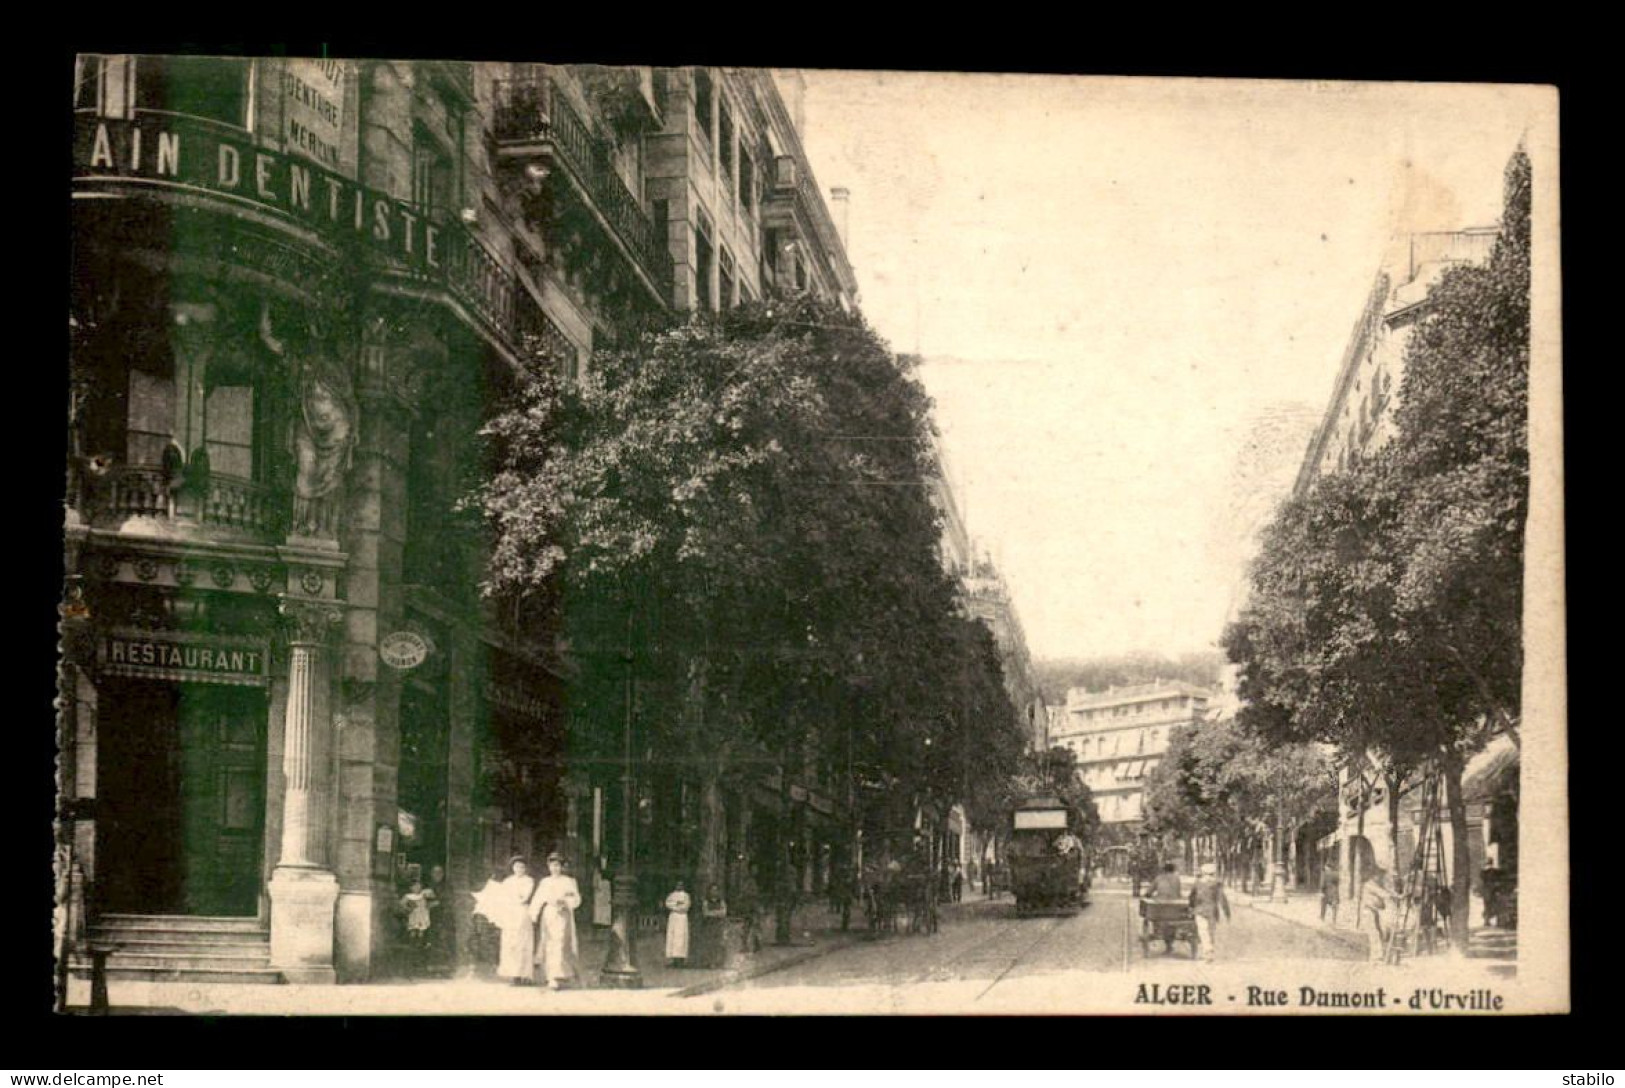 ALGERIE - ALGER - RUE DUMONT D'URVILLE - RESTAURANT "JAUMON" - Algiers